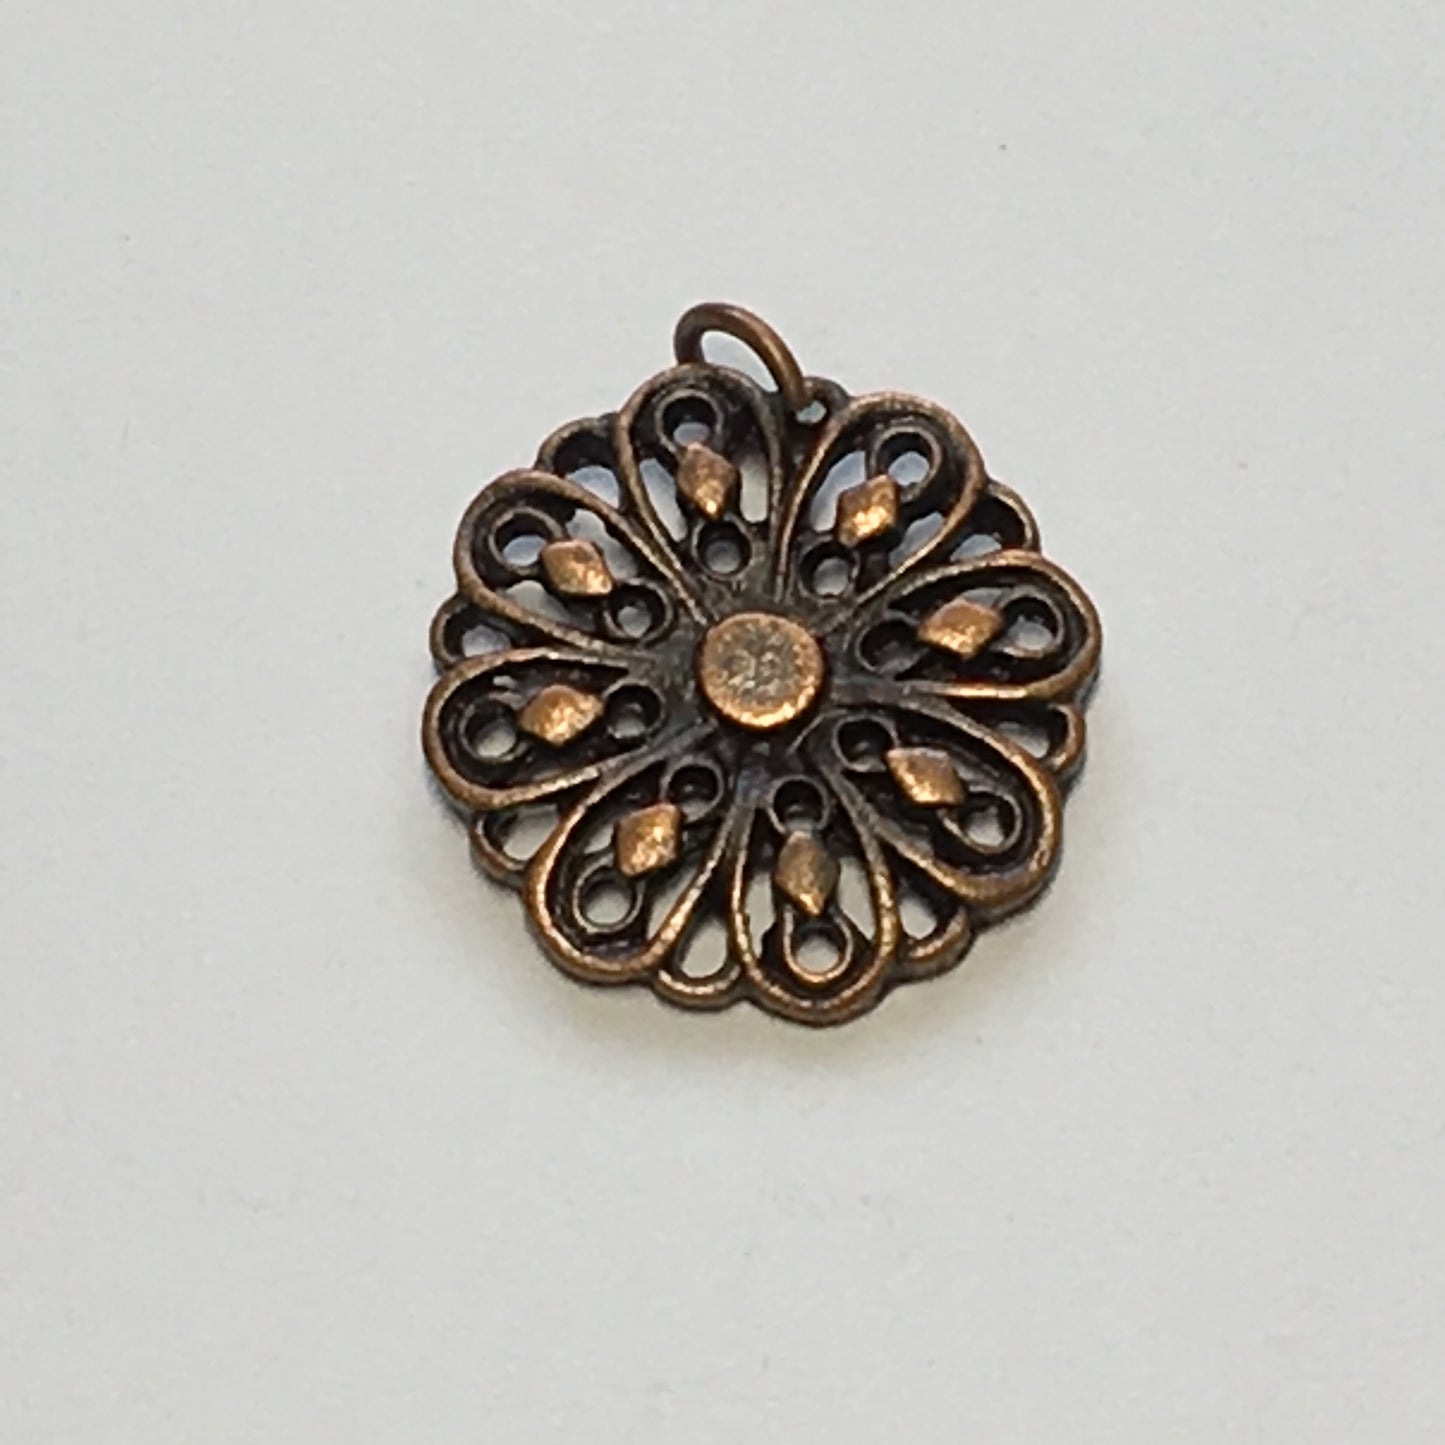 Antique Copper Flower Charm, 14 mm